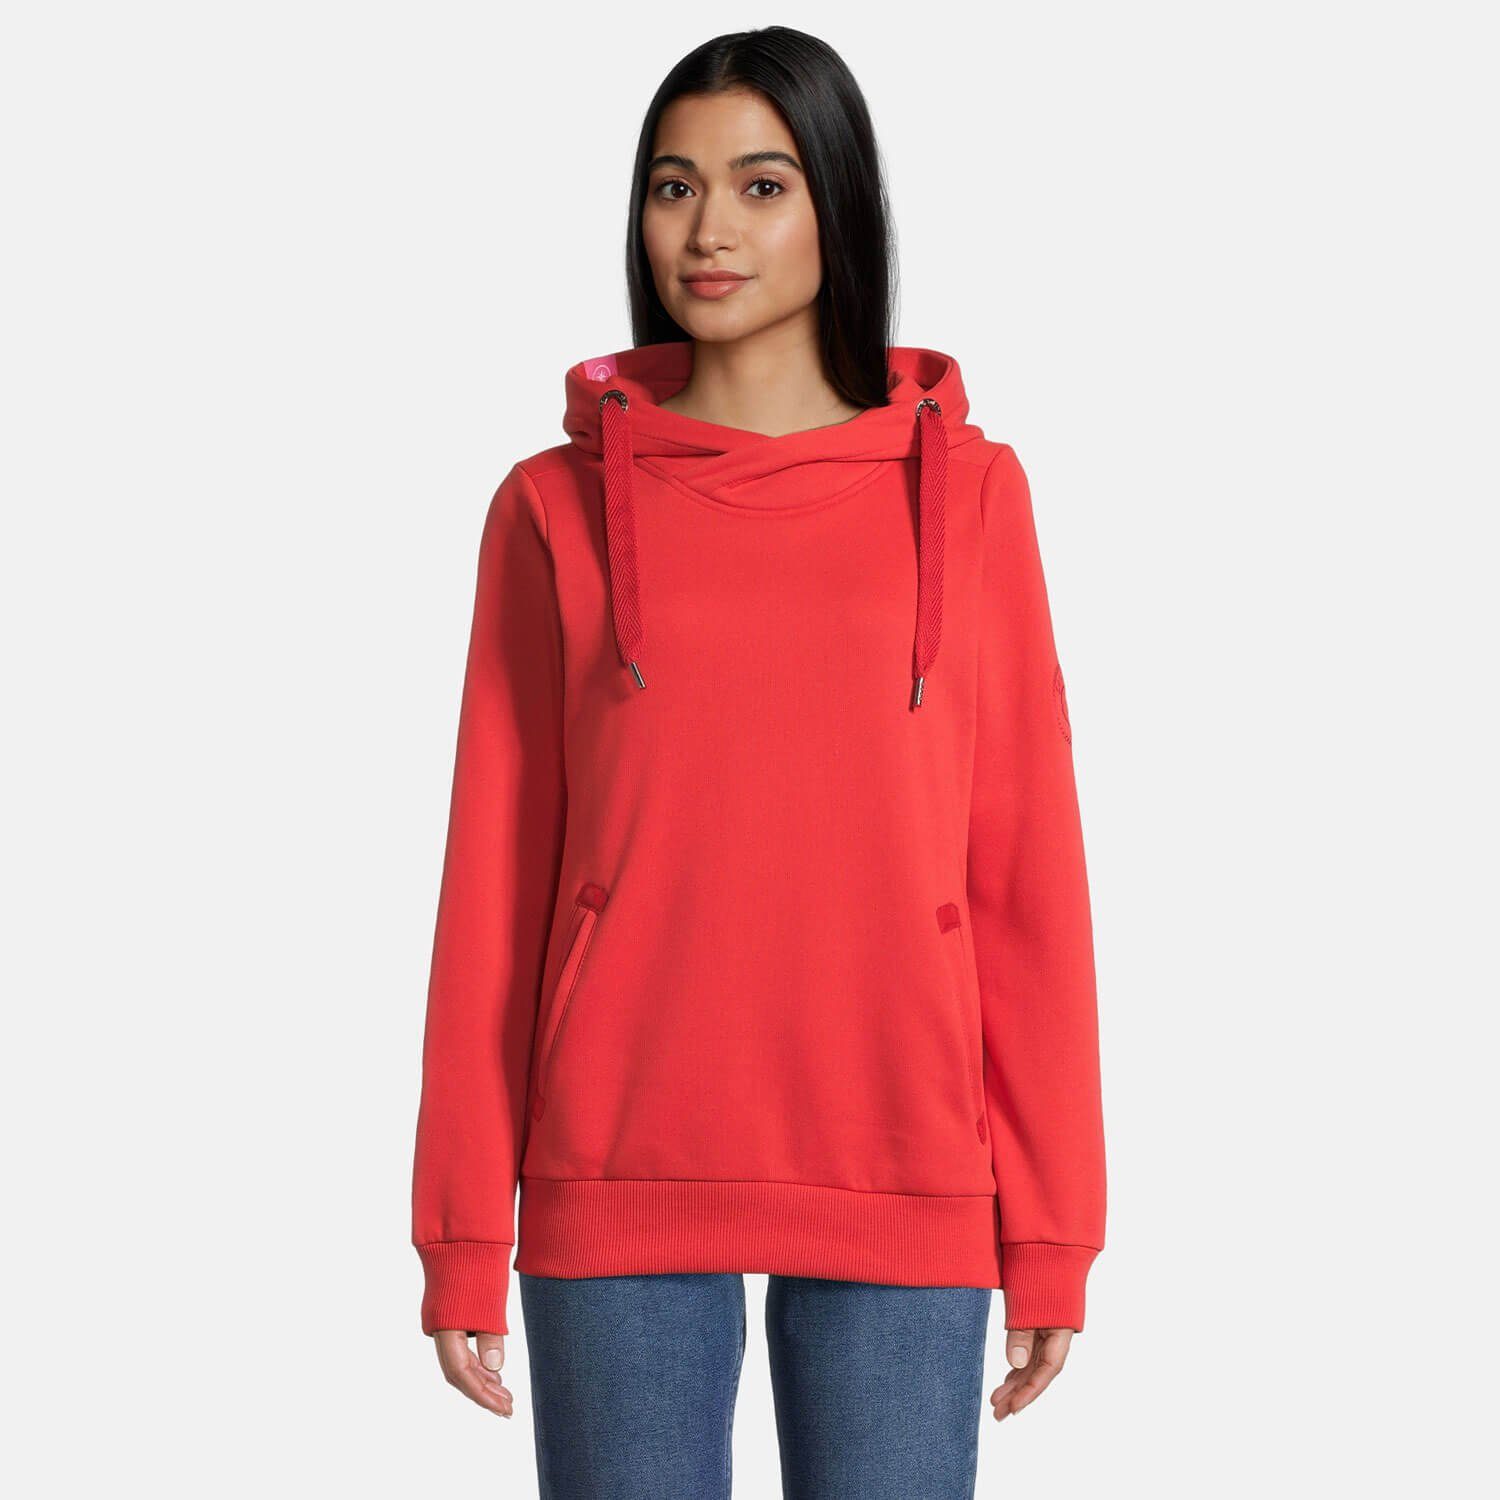 salzhaut Kapuzenpullover Damen Hoodie Pullover Sweater Kapuze unifarben - red Sünn mit chilli